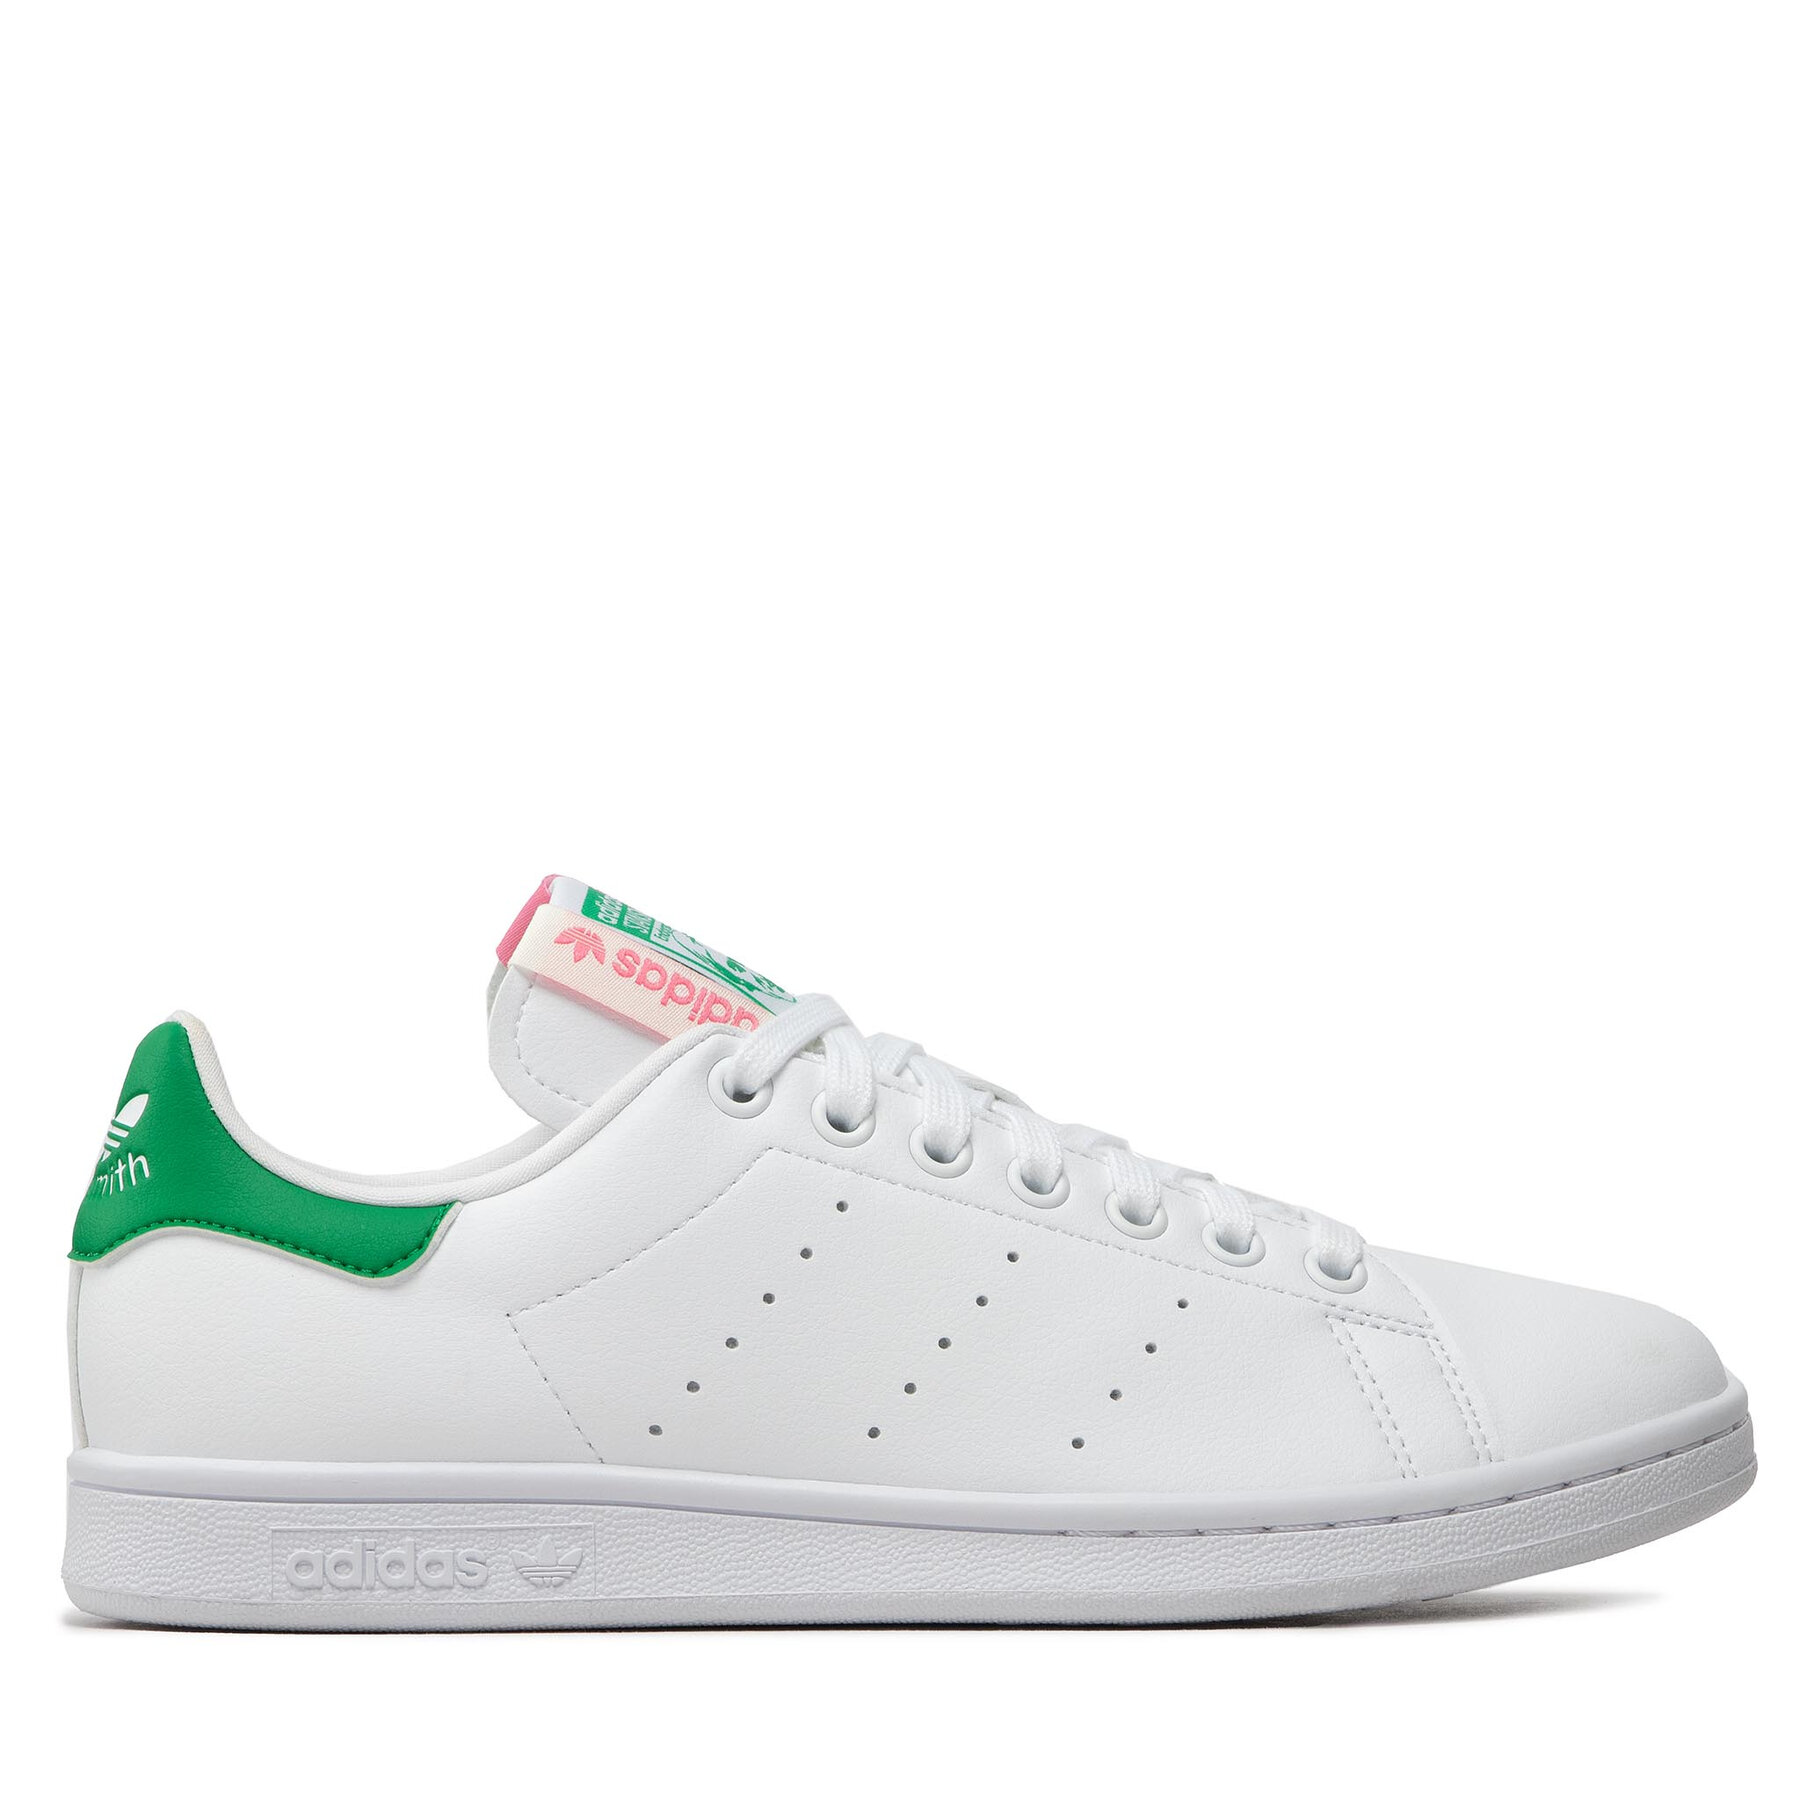 Comprar en oferta Adidas Stan Smith Mujer blanco/verde/rosa (GY1508)